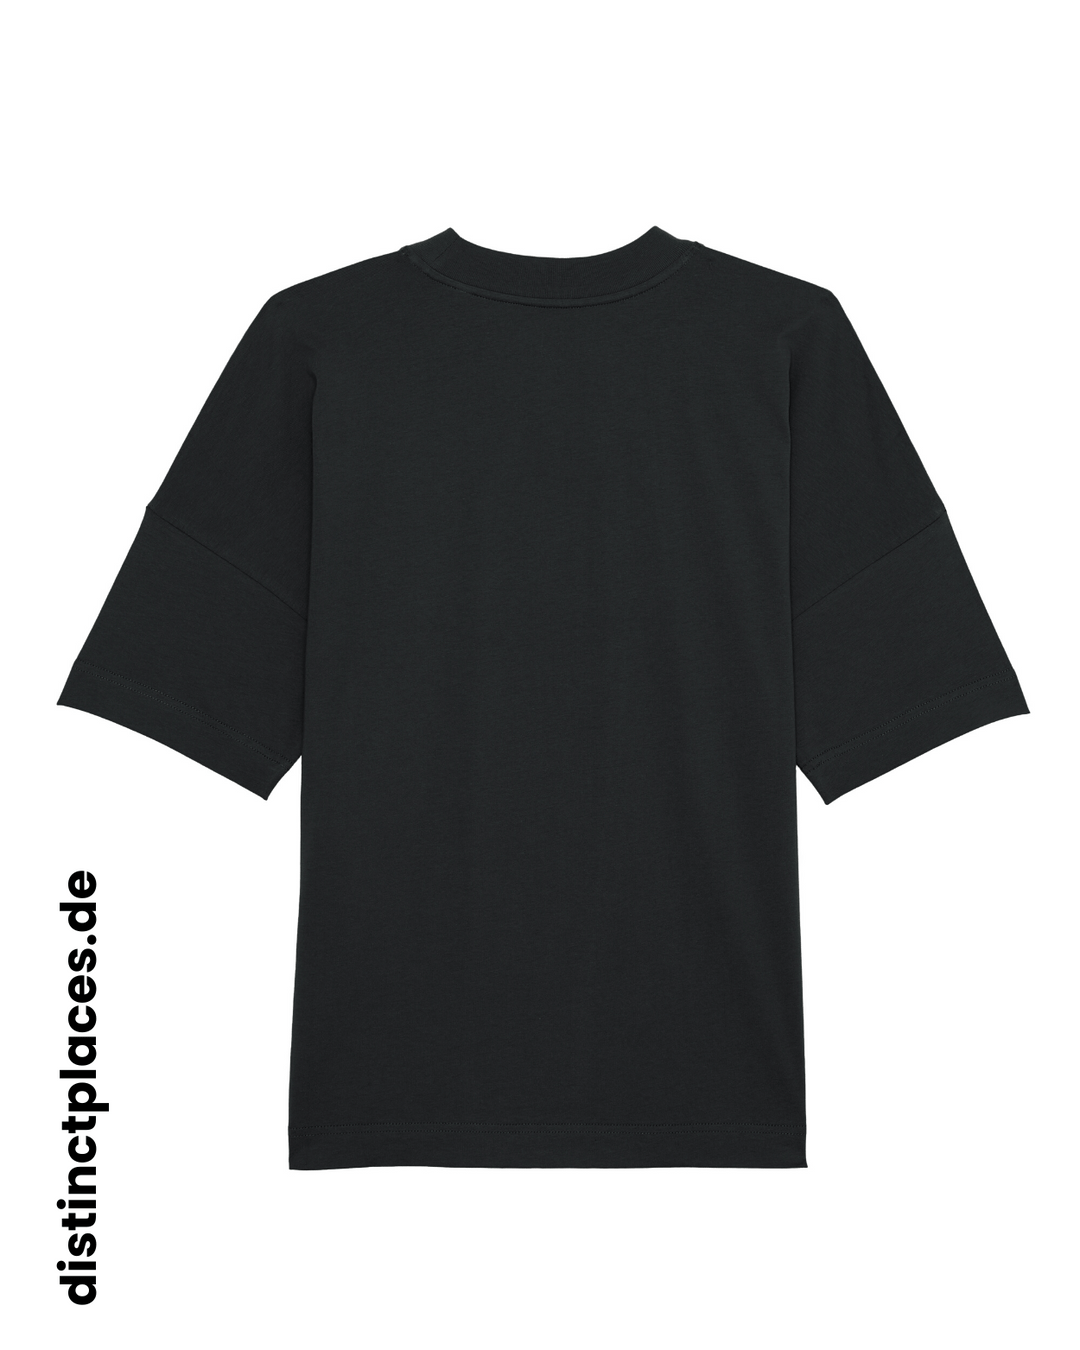 Schwarzes fairtrade, vegan und bio-baumwoll Oversized T-Shirt von hinten mit einem minimalistischem weißen Logo, beziehungsweise Schriftzug für Brandenburg